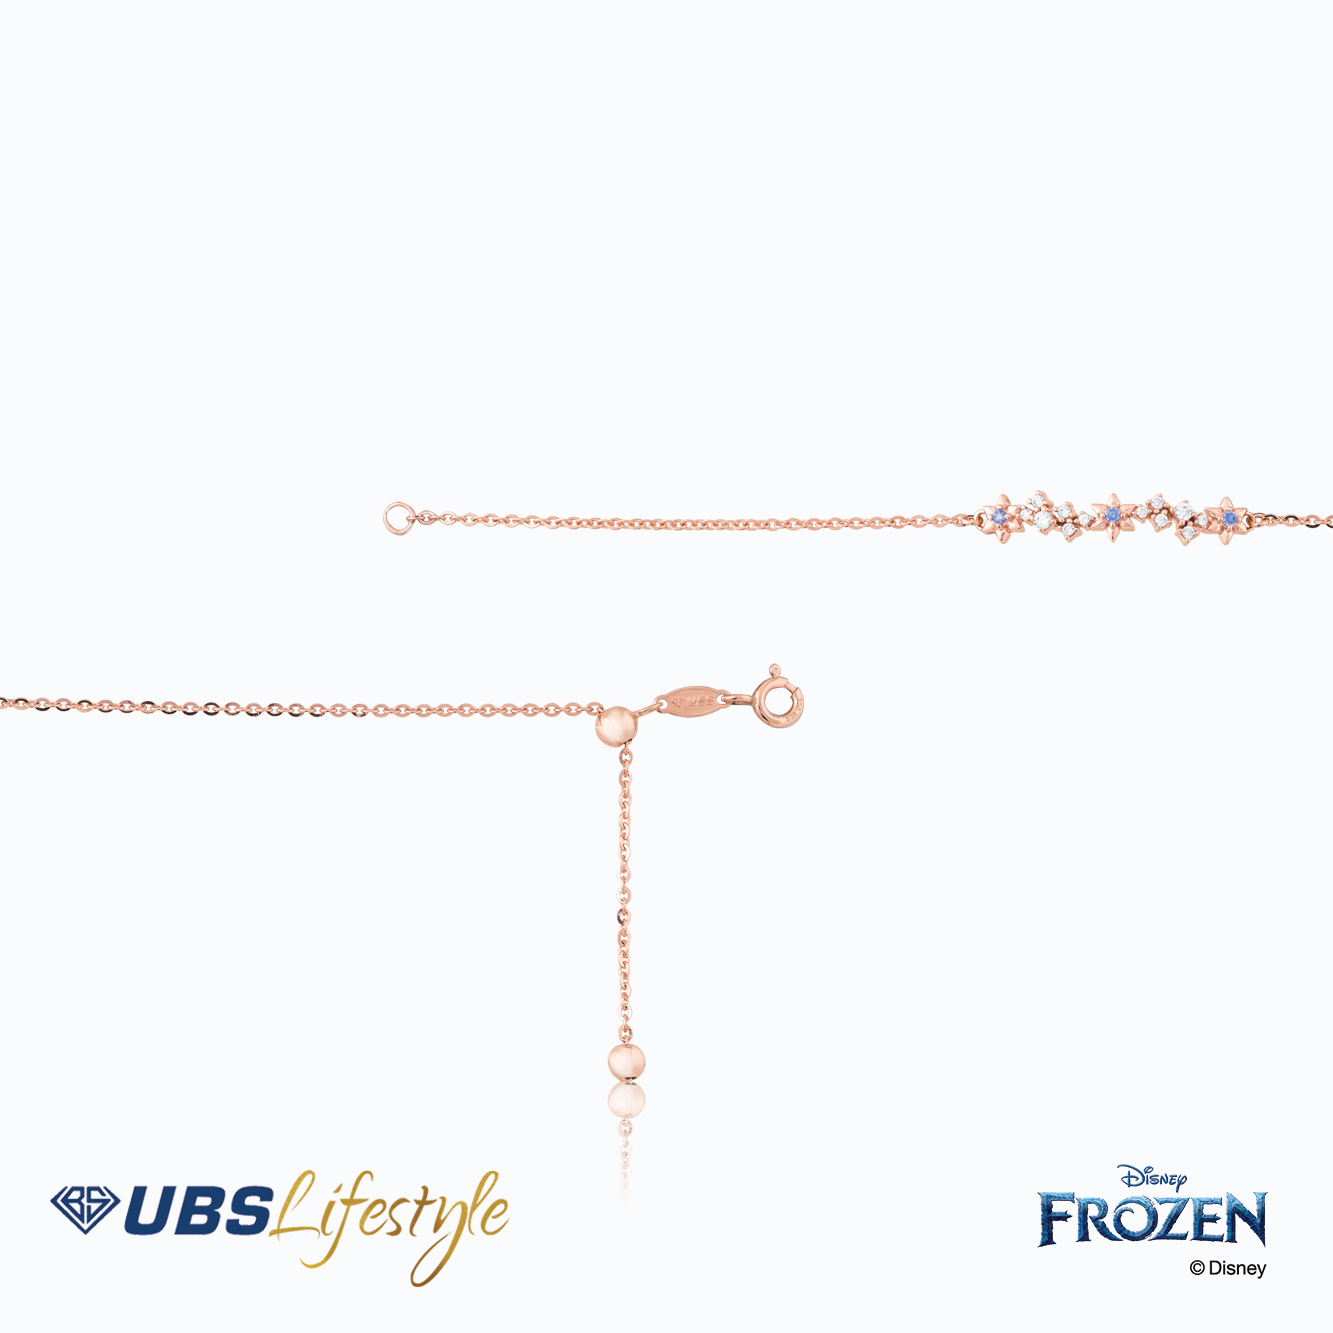 UBS Gelang Emas Disney Frozen - Kgy0082R - 17K